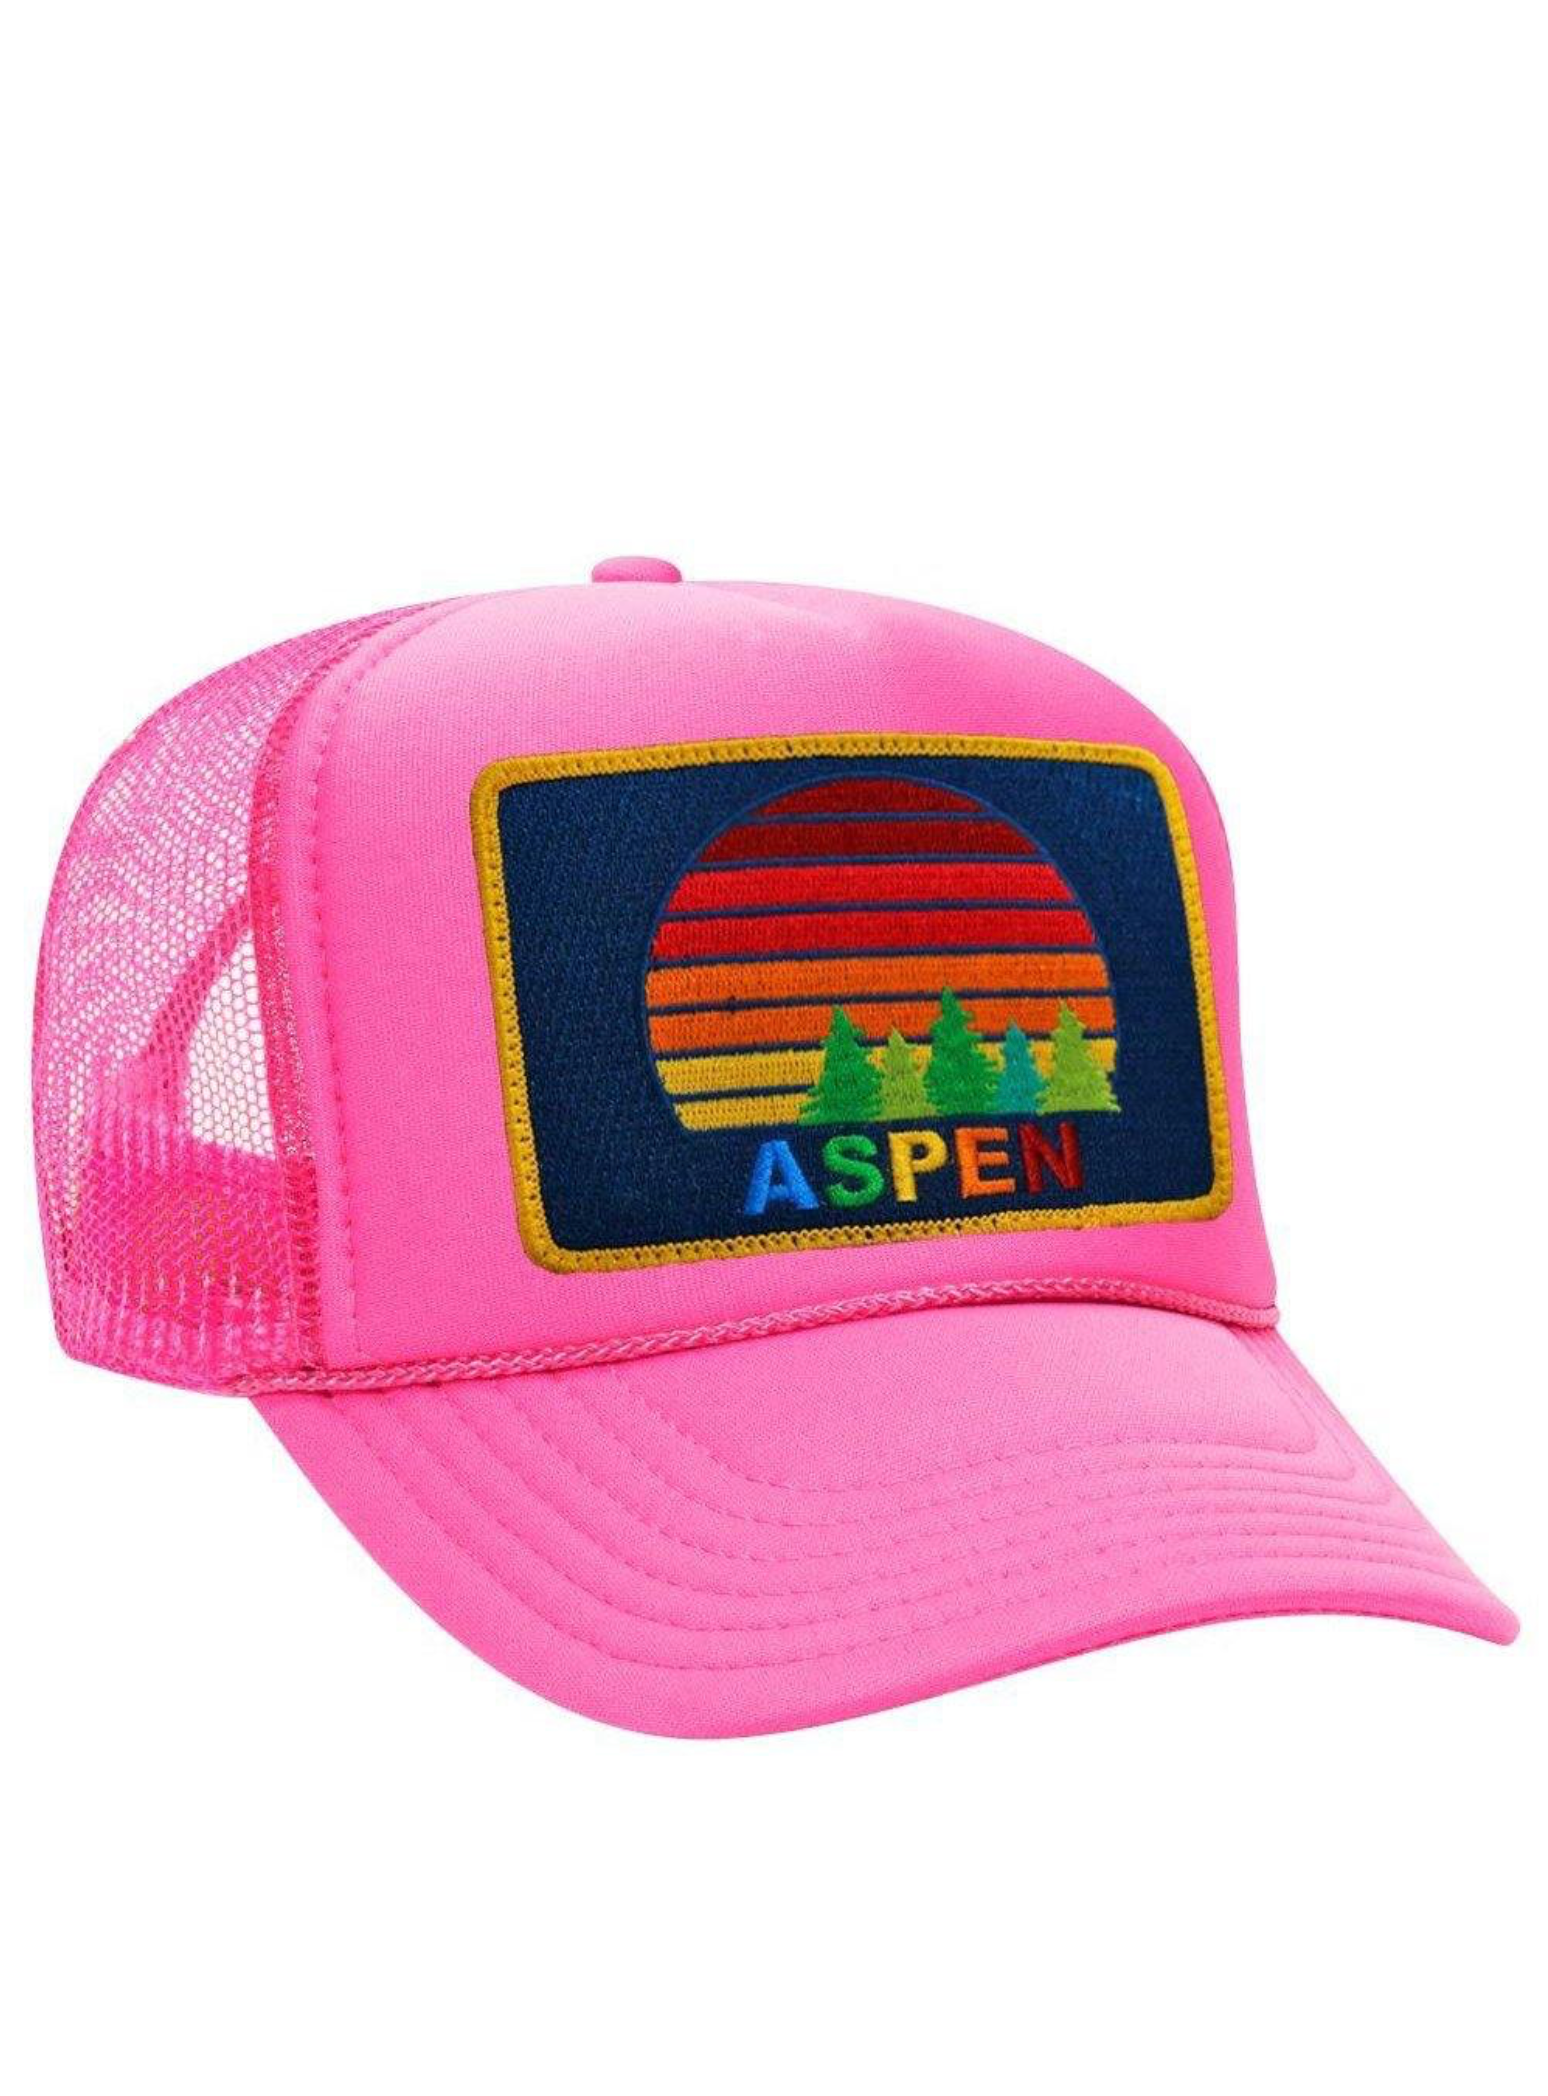 Aviator Nation Aspen Sunset Trucker Hat in Neon Pink – SINGER22